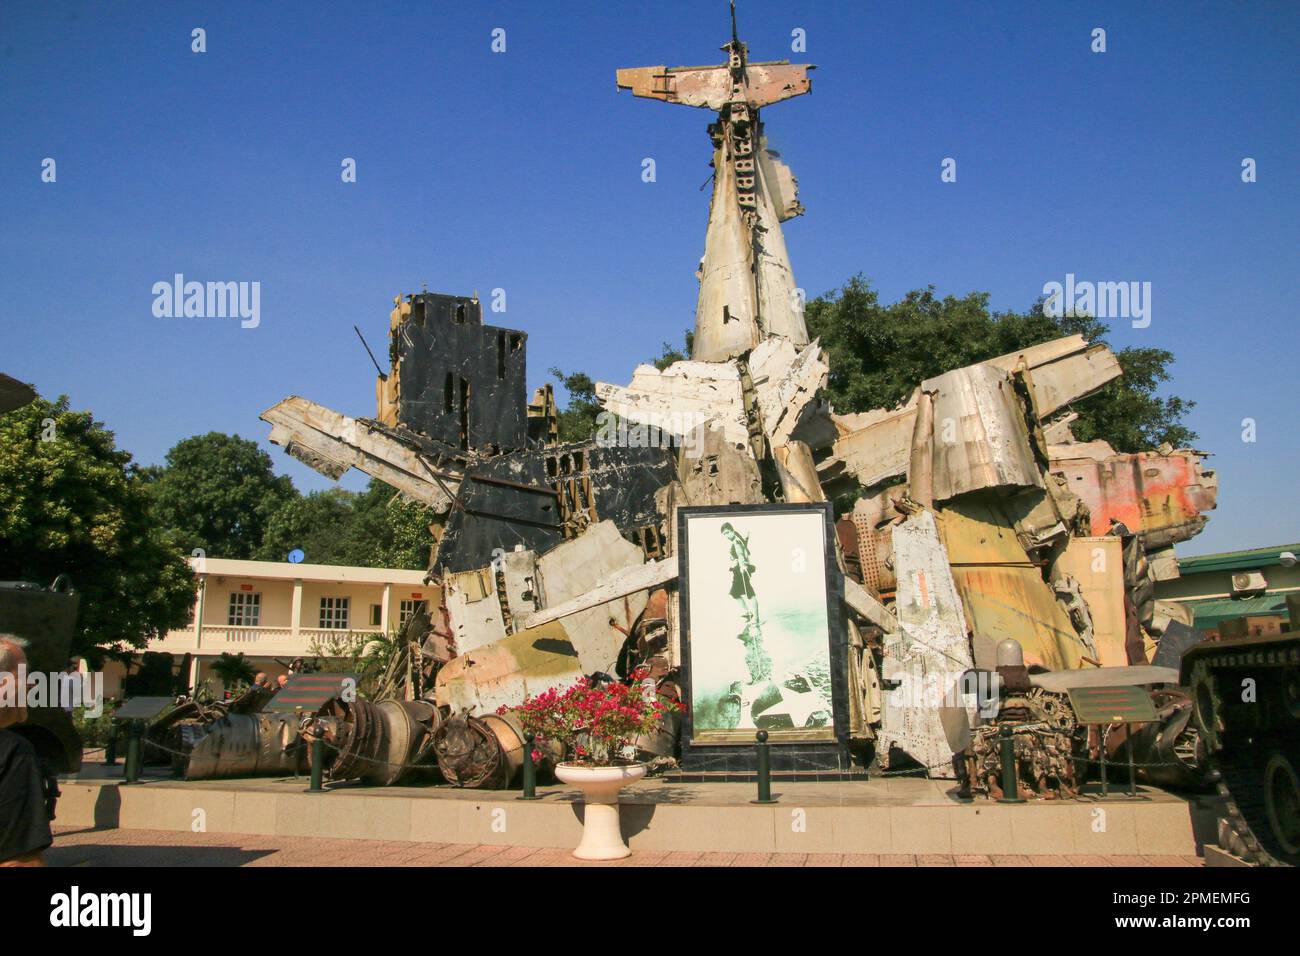 Flugzeuge, Museum für Militärgeschichte, Dien Bien Phu, Hanoi, Vietnam Stockfoto